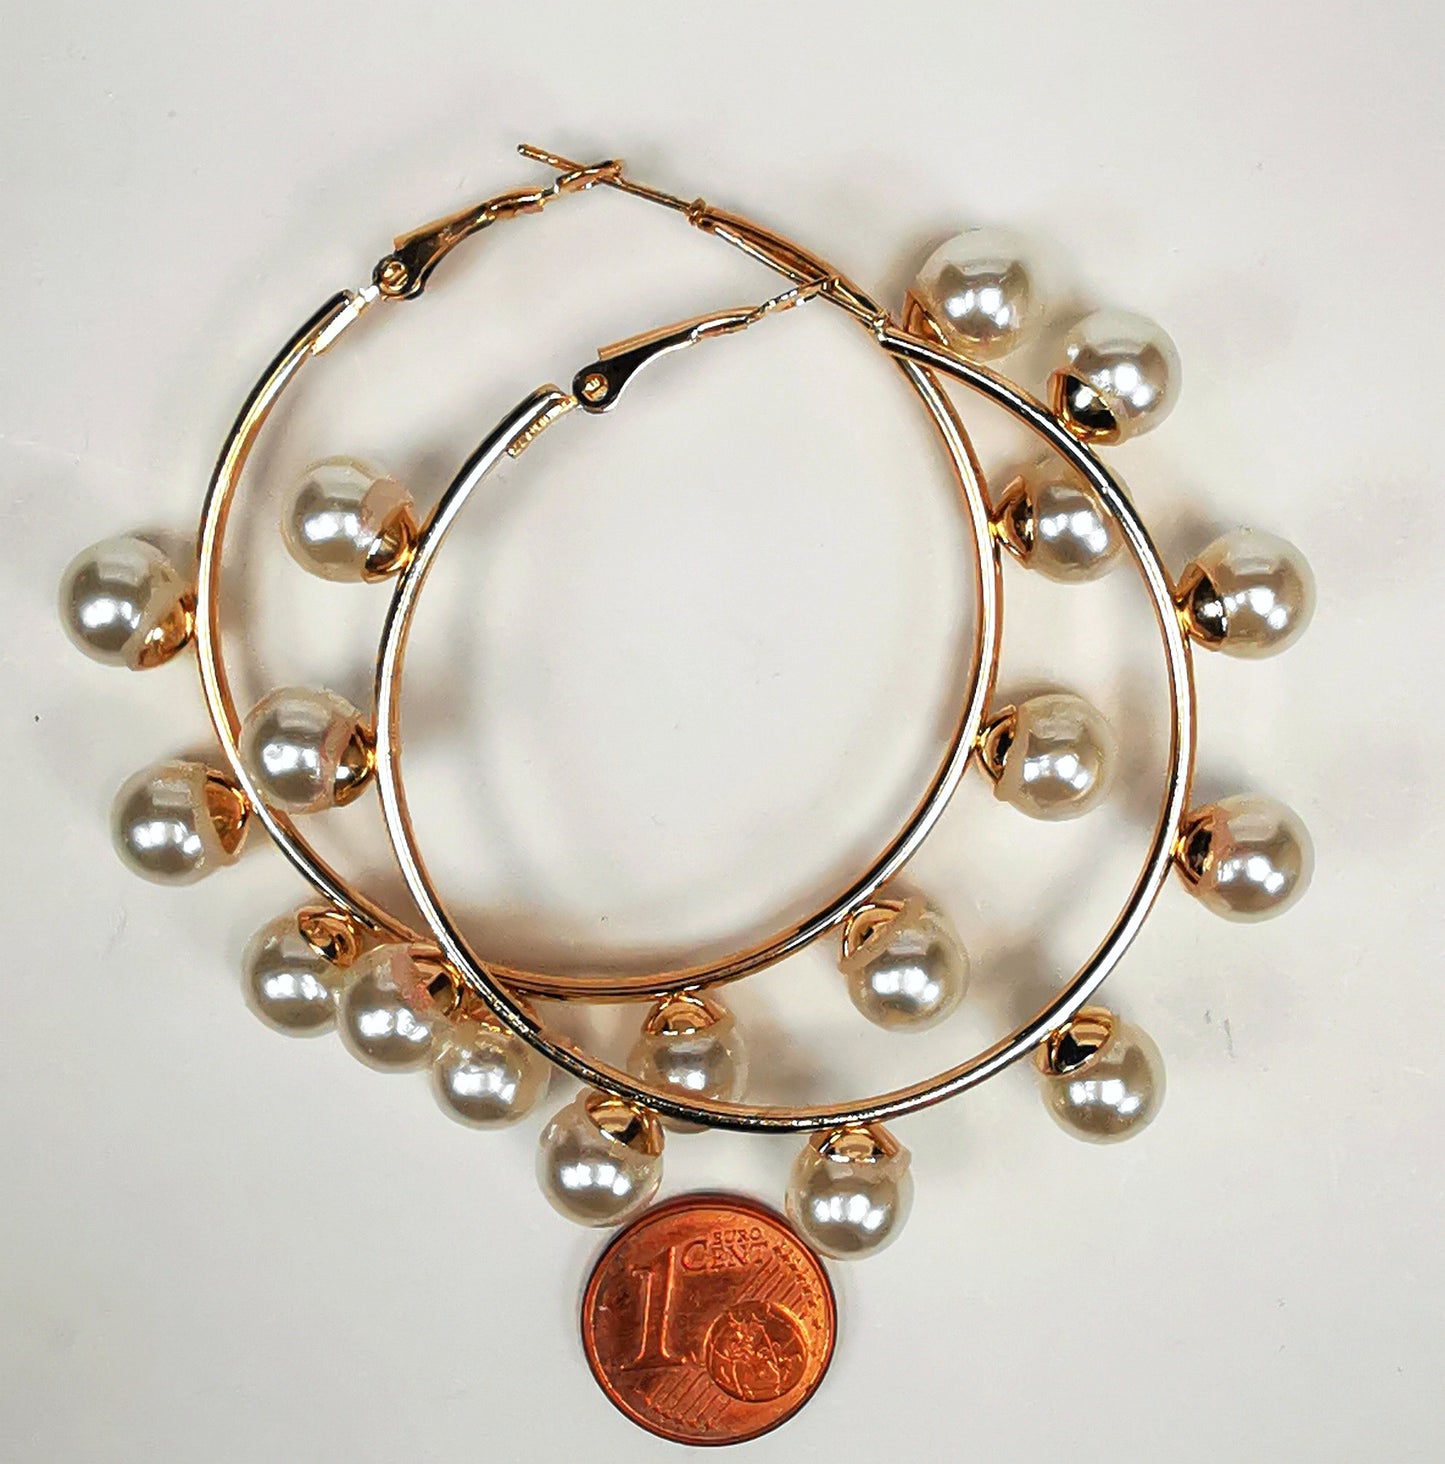 Boucles d'oreilles créoles et perles, diamètre 35mm, fil 1.5mm avec 9 perles de 8mm sur la périphérie. Présentées posées sur un fond blanc, l'une sur l'autre  au dessus d'une pièce de 1 centime, vue de dessus.